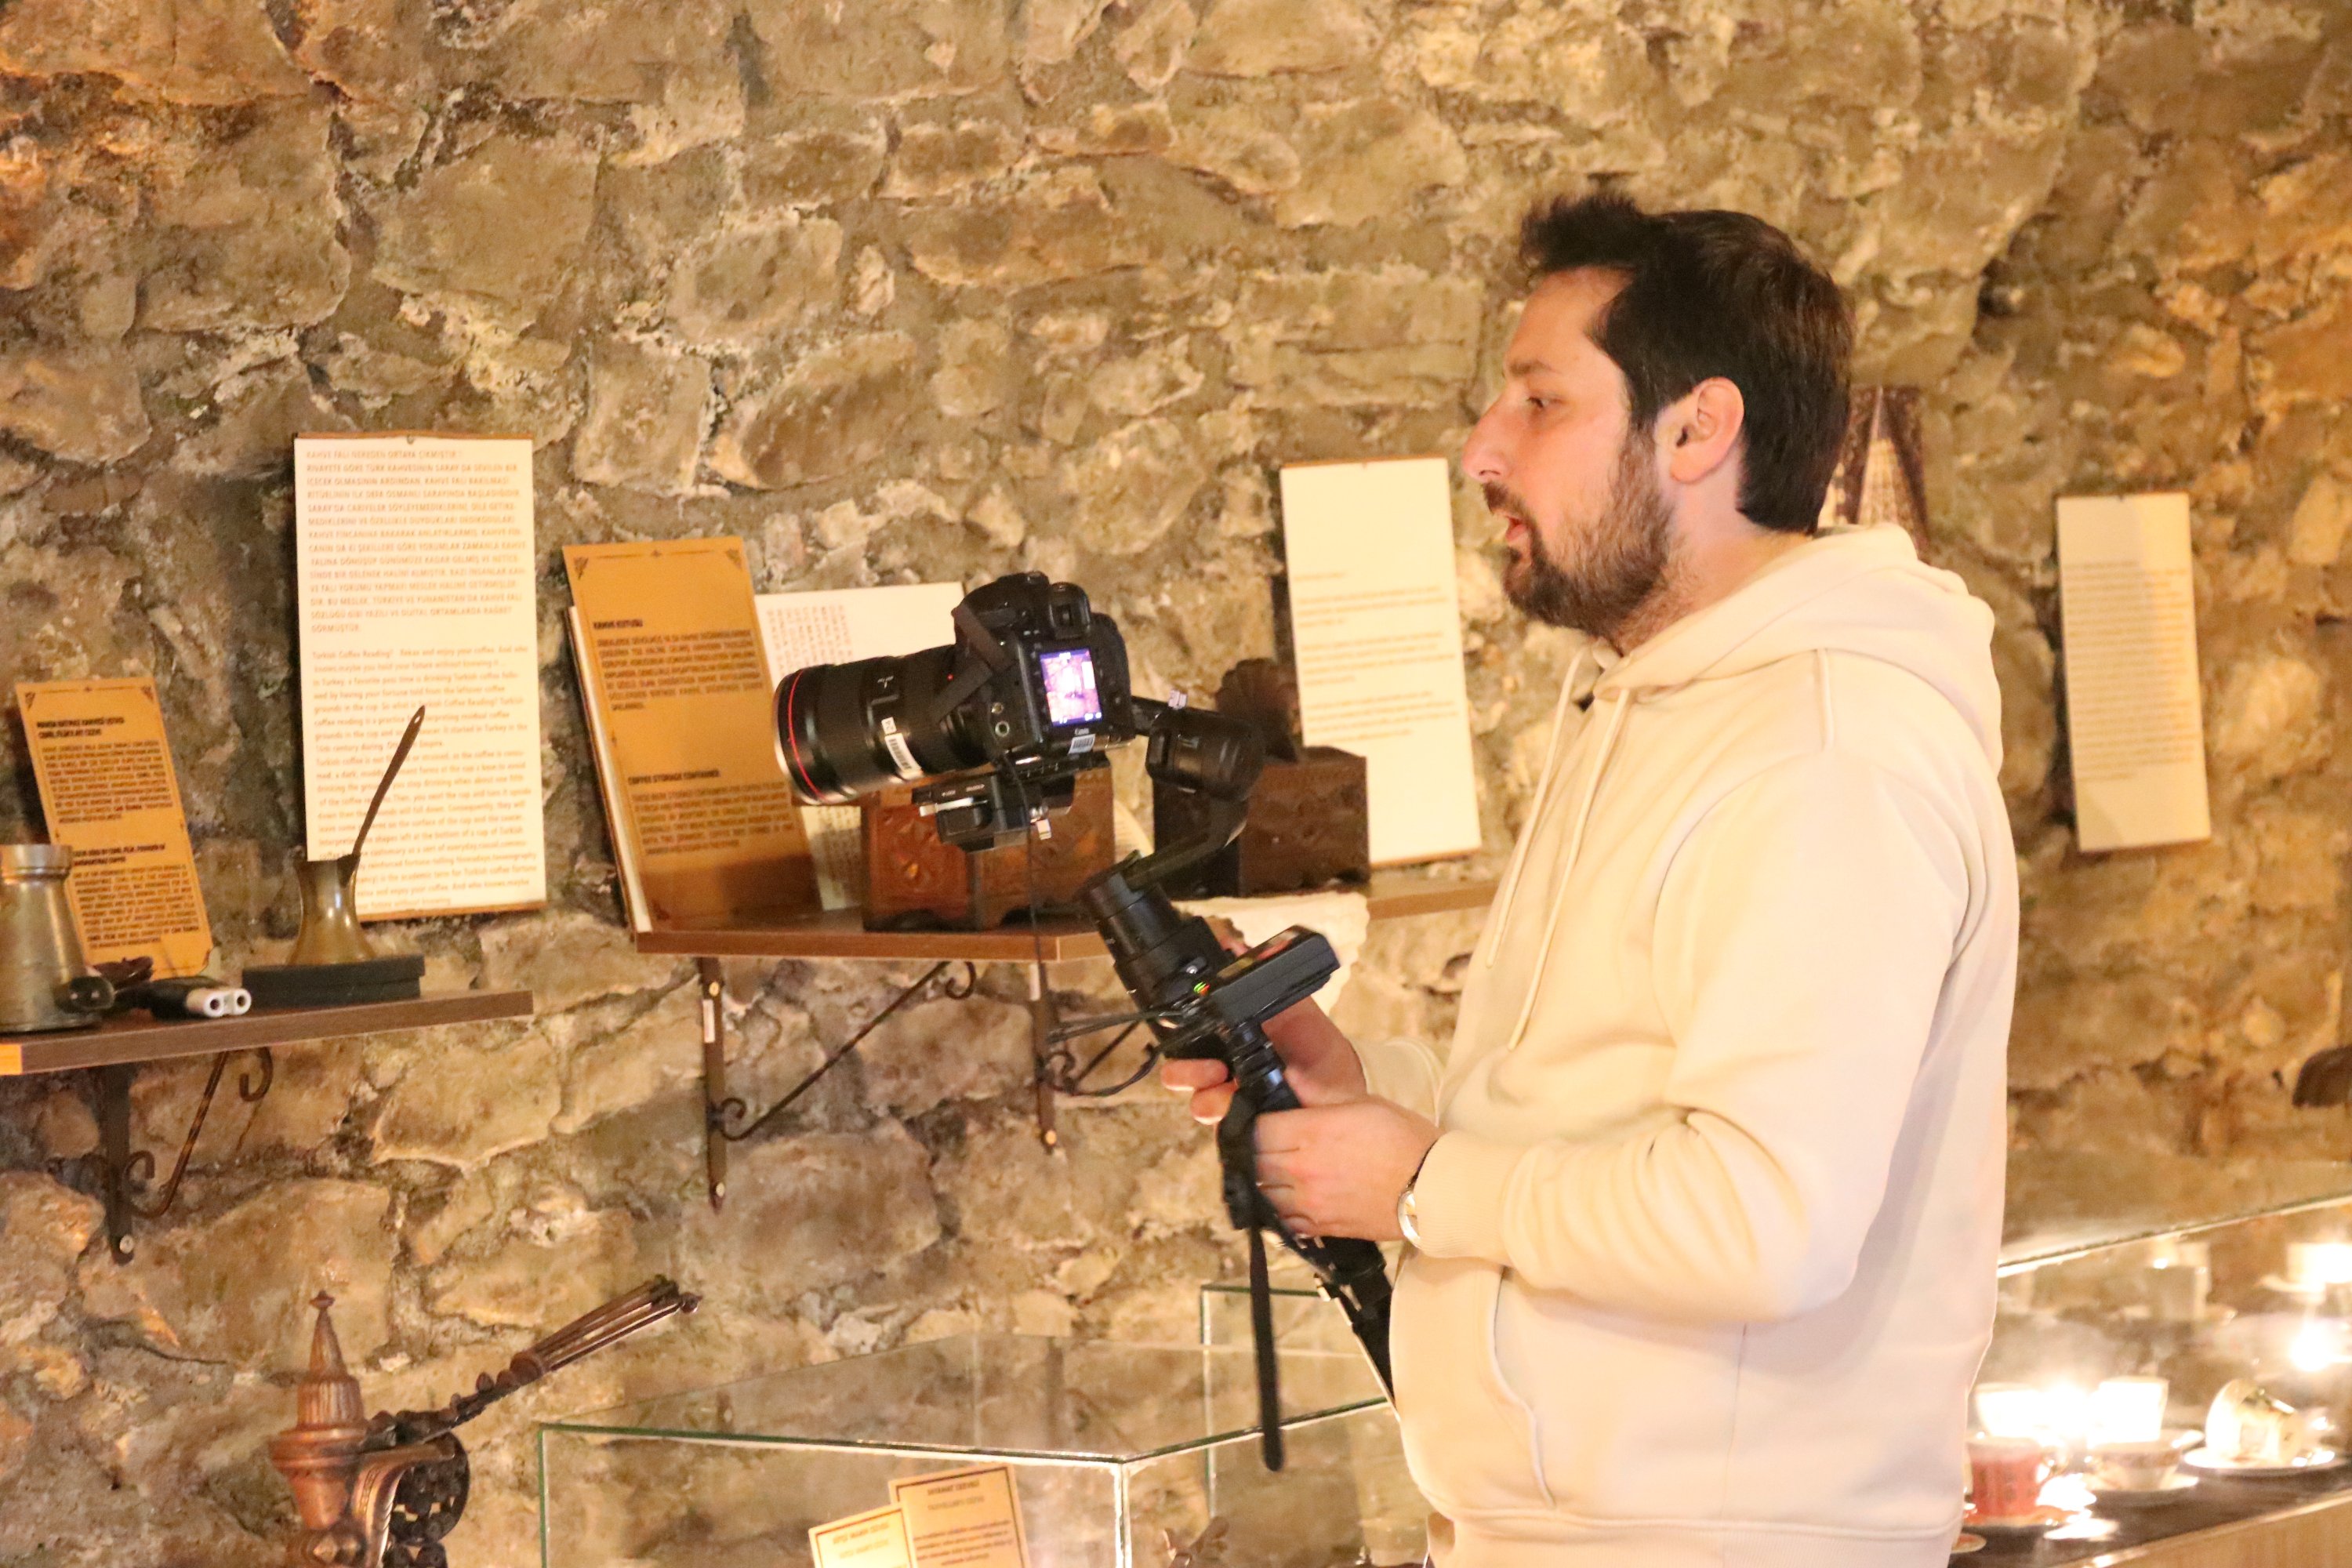     Фільми фотографа Романа Крюкова в Турецькому музеї кави, Сафранболу, Північна Туреччина, 23 травня 2021 р. (Фото АА)